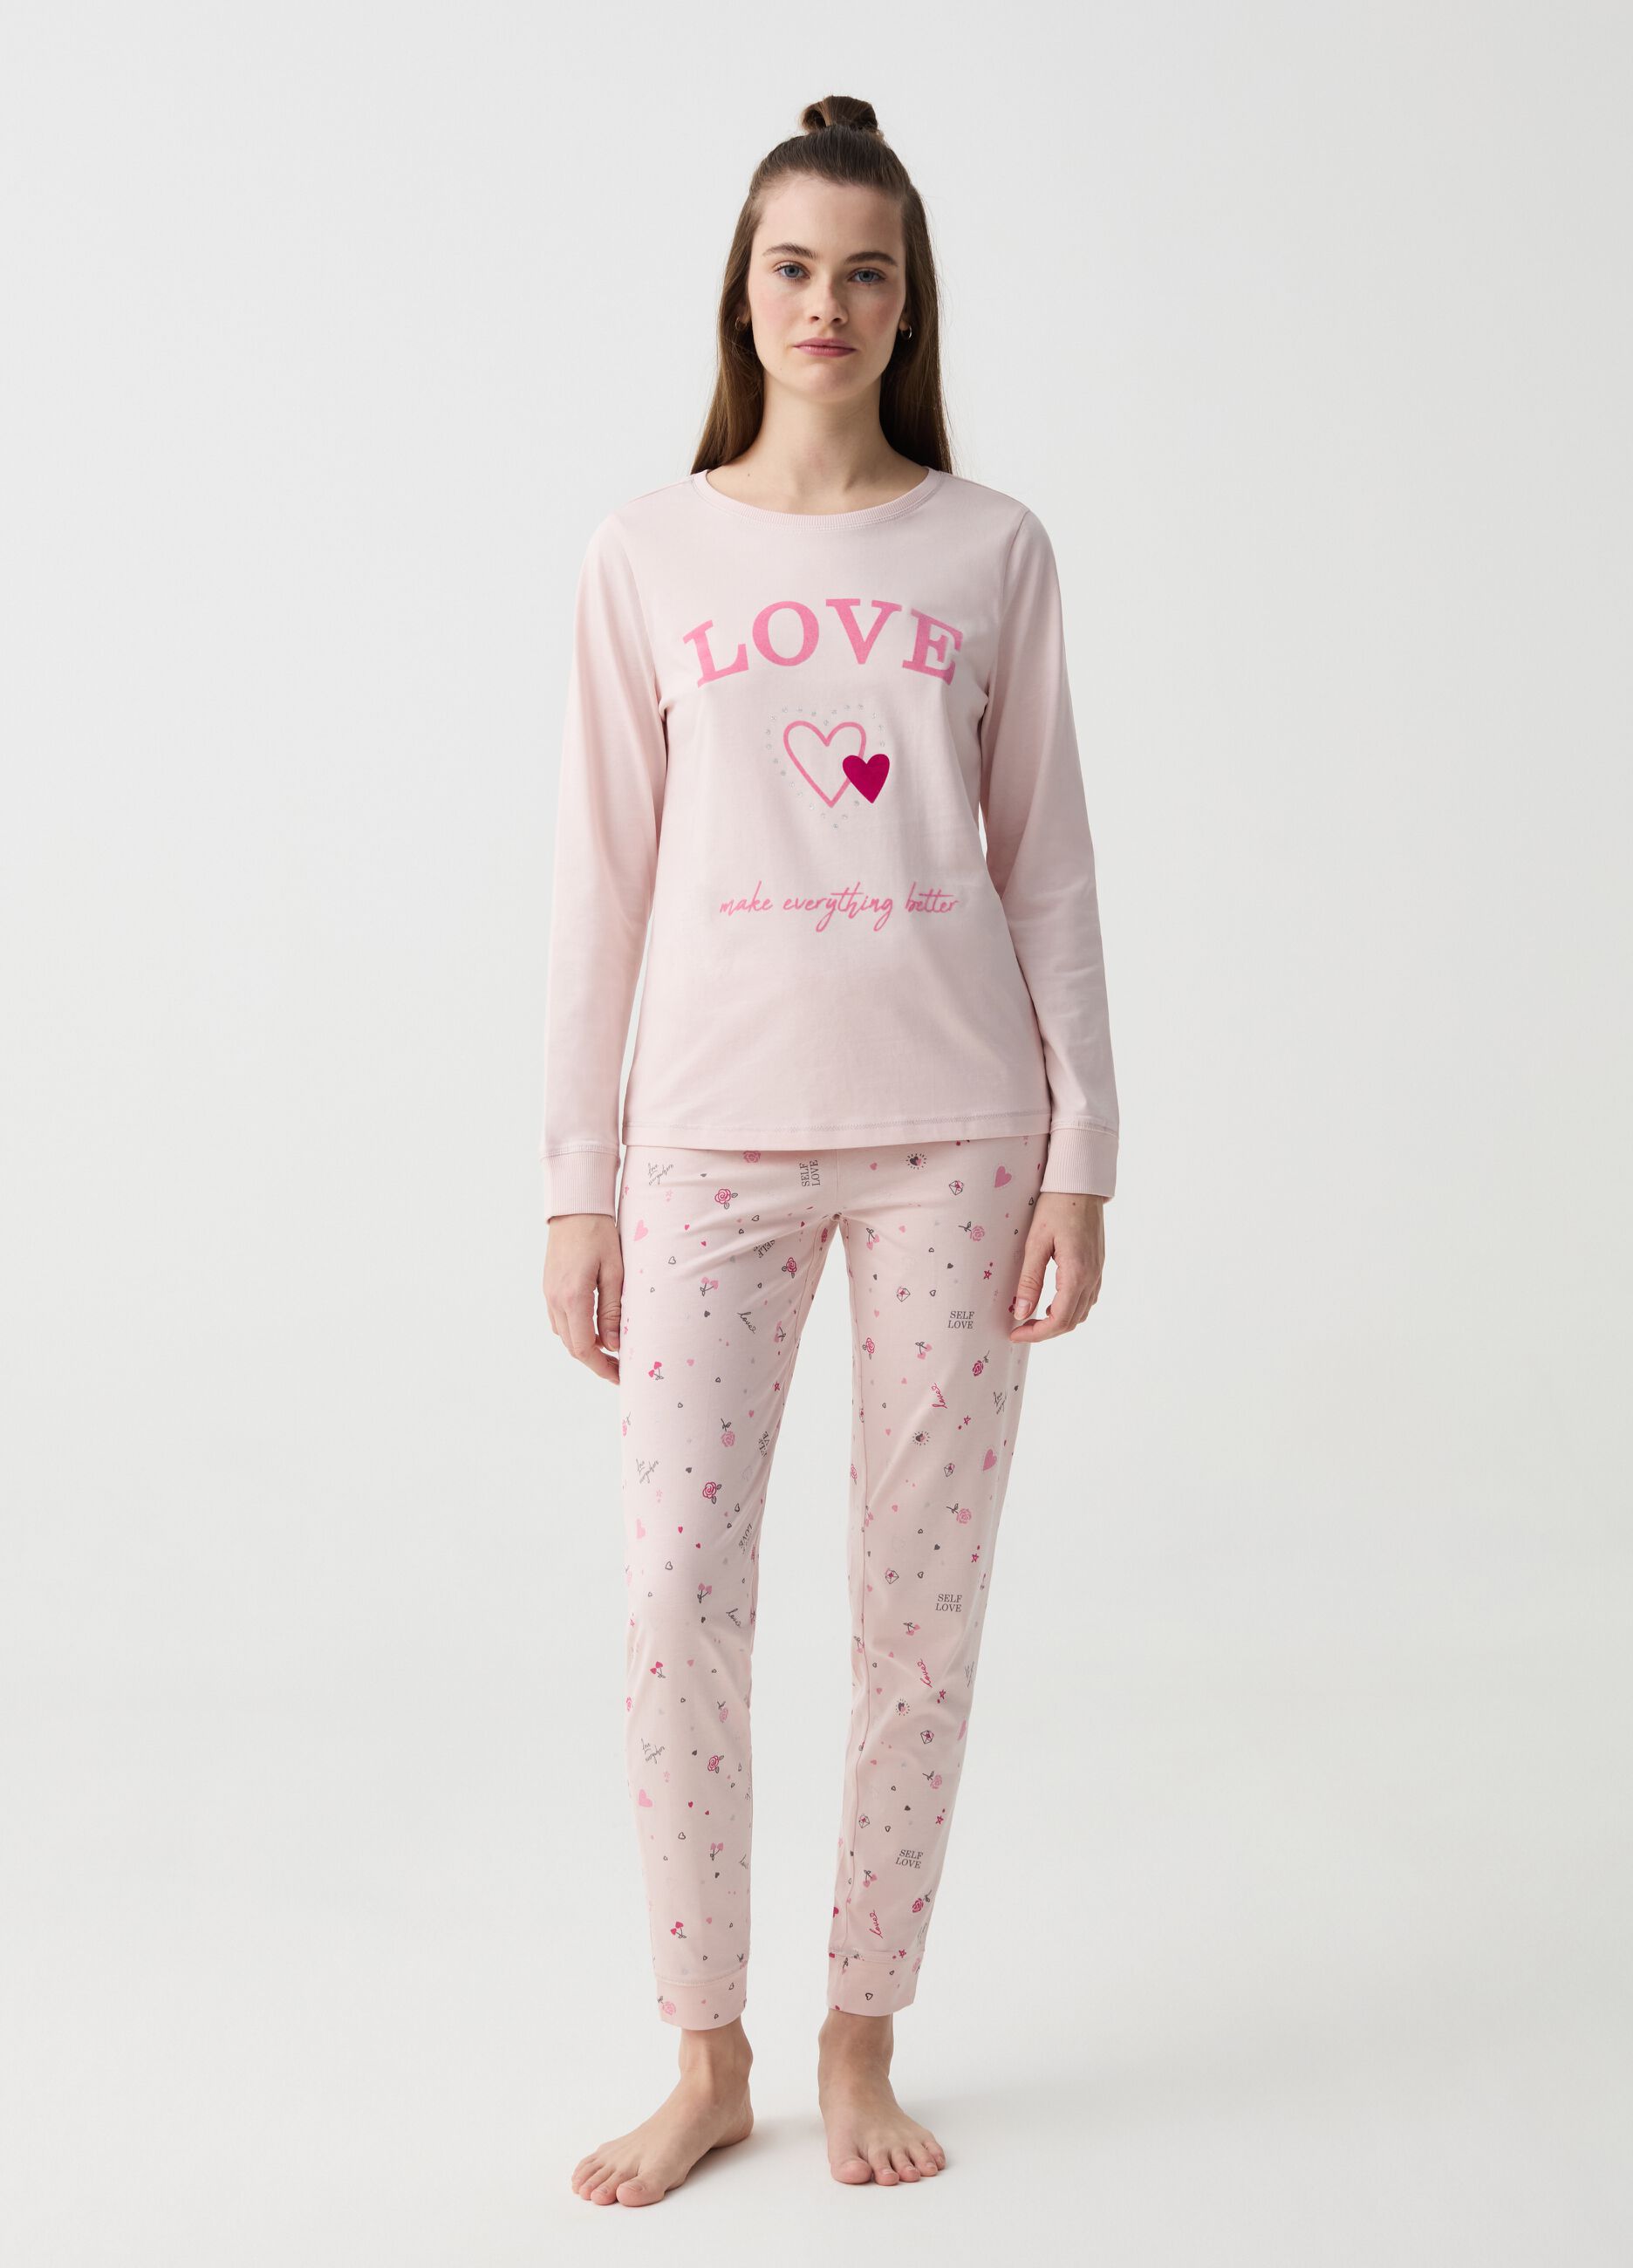 Organic cotton pyjamas with love print